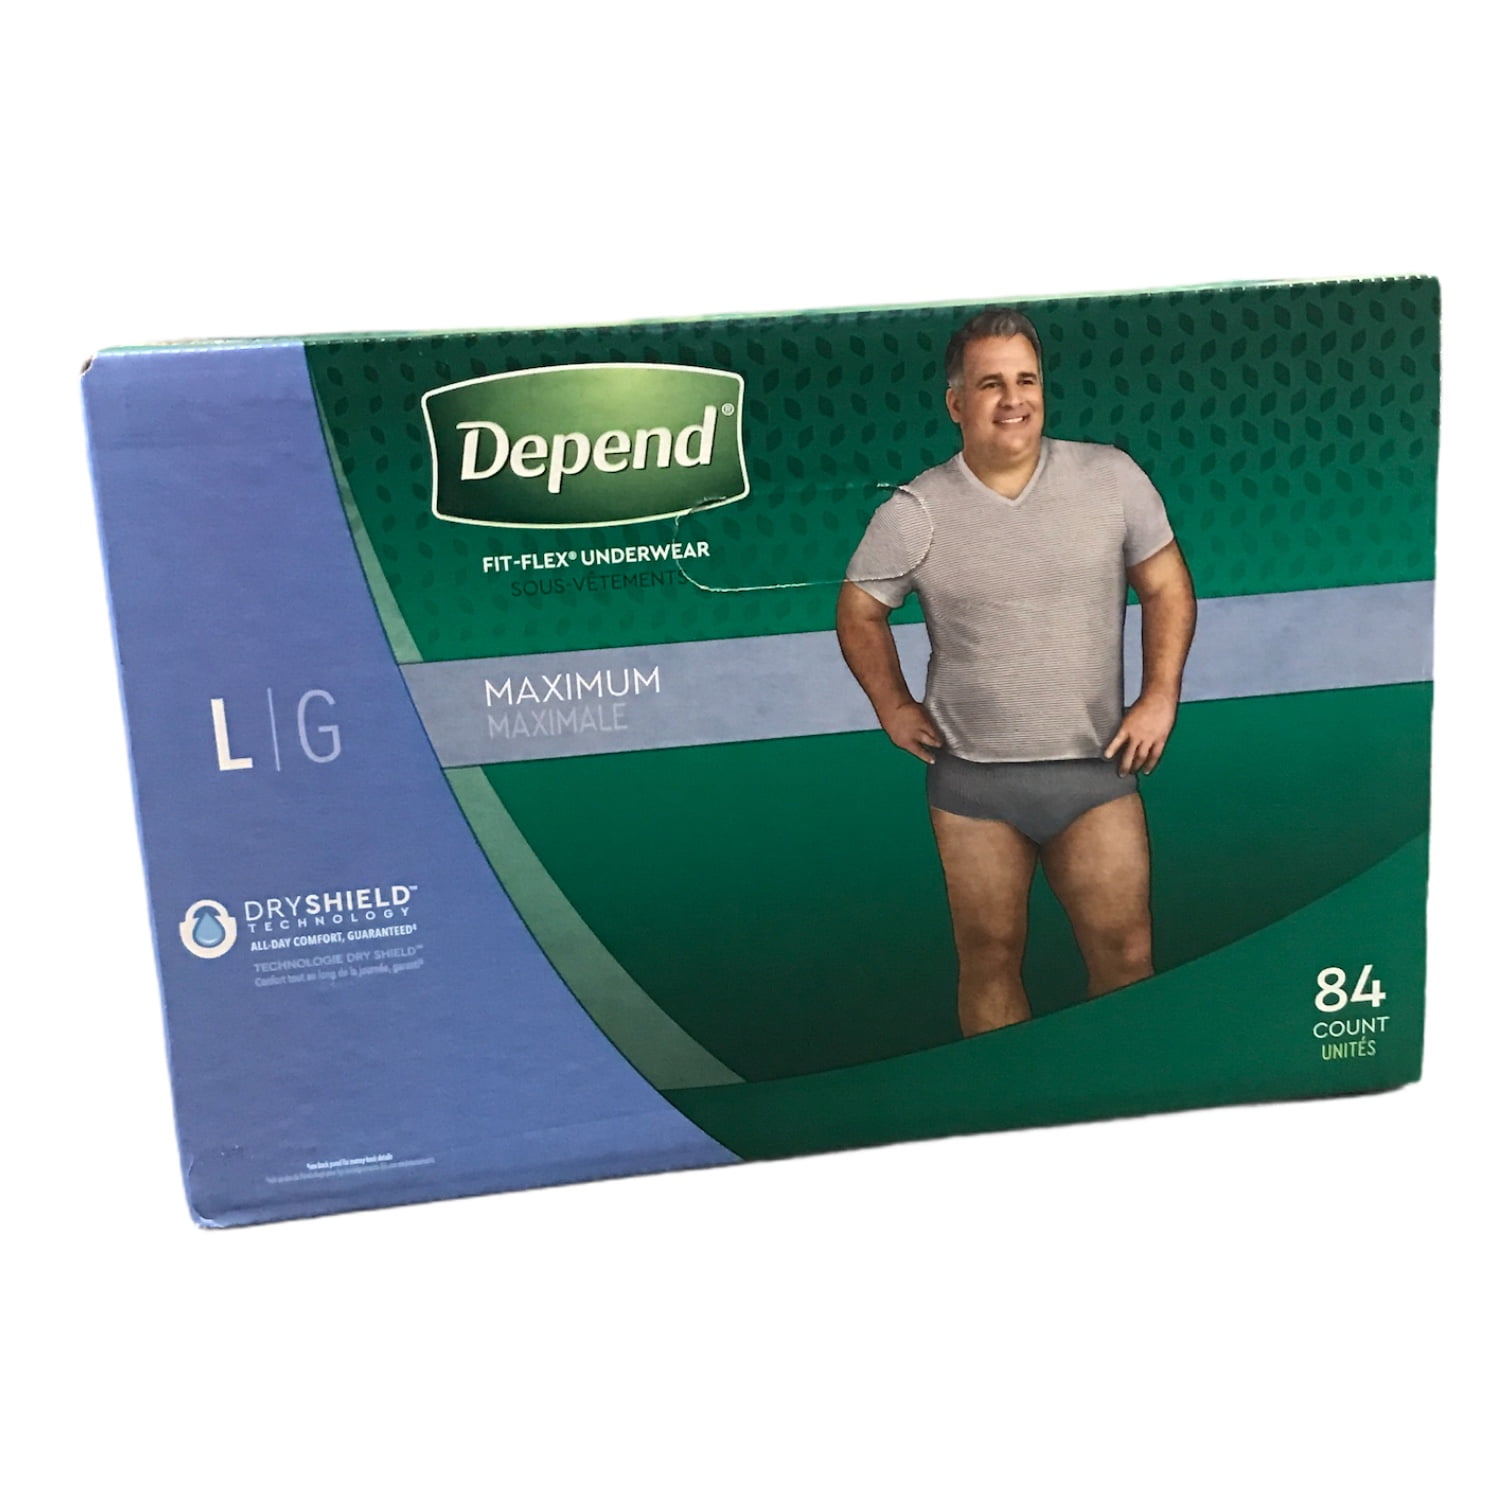 Depend Fit-Flex Underwear for Men, Large (84 Count) - Walmart.com